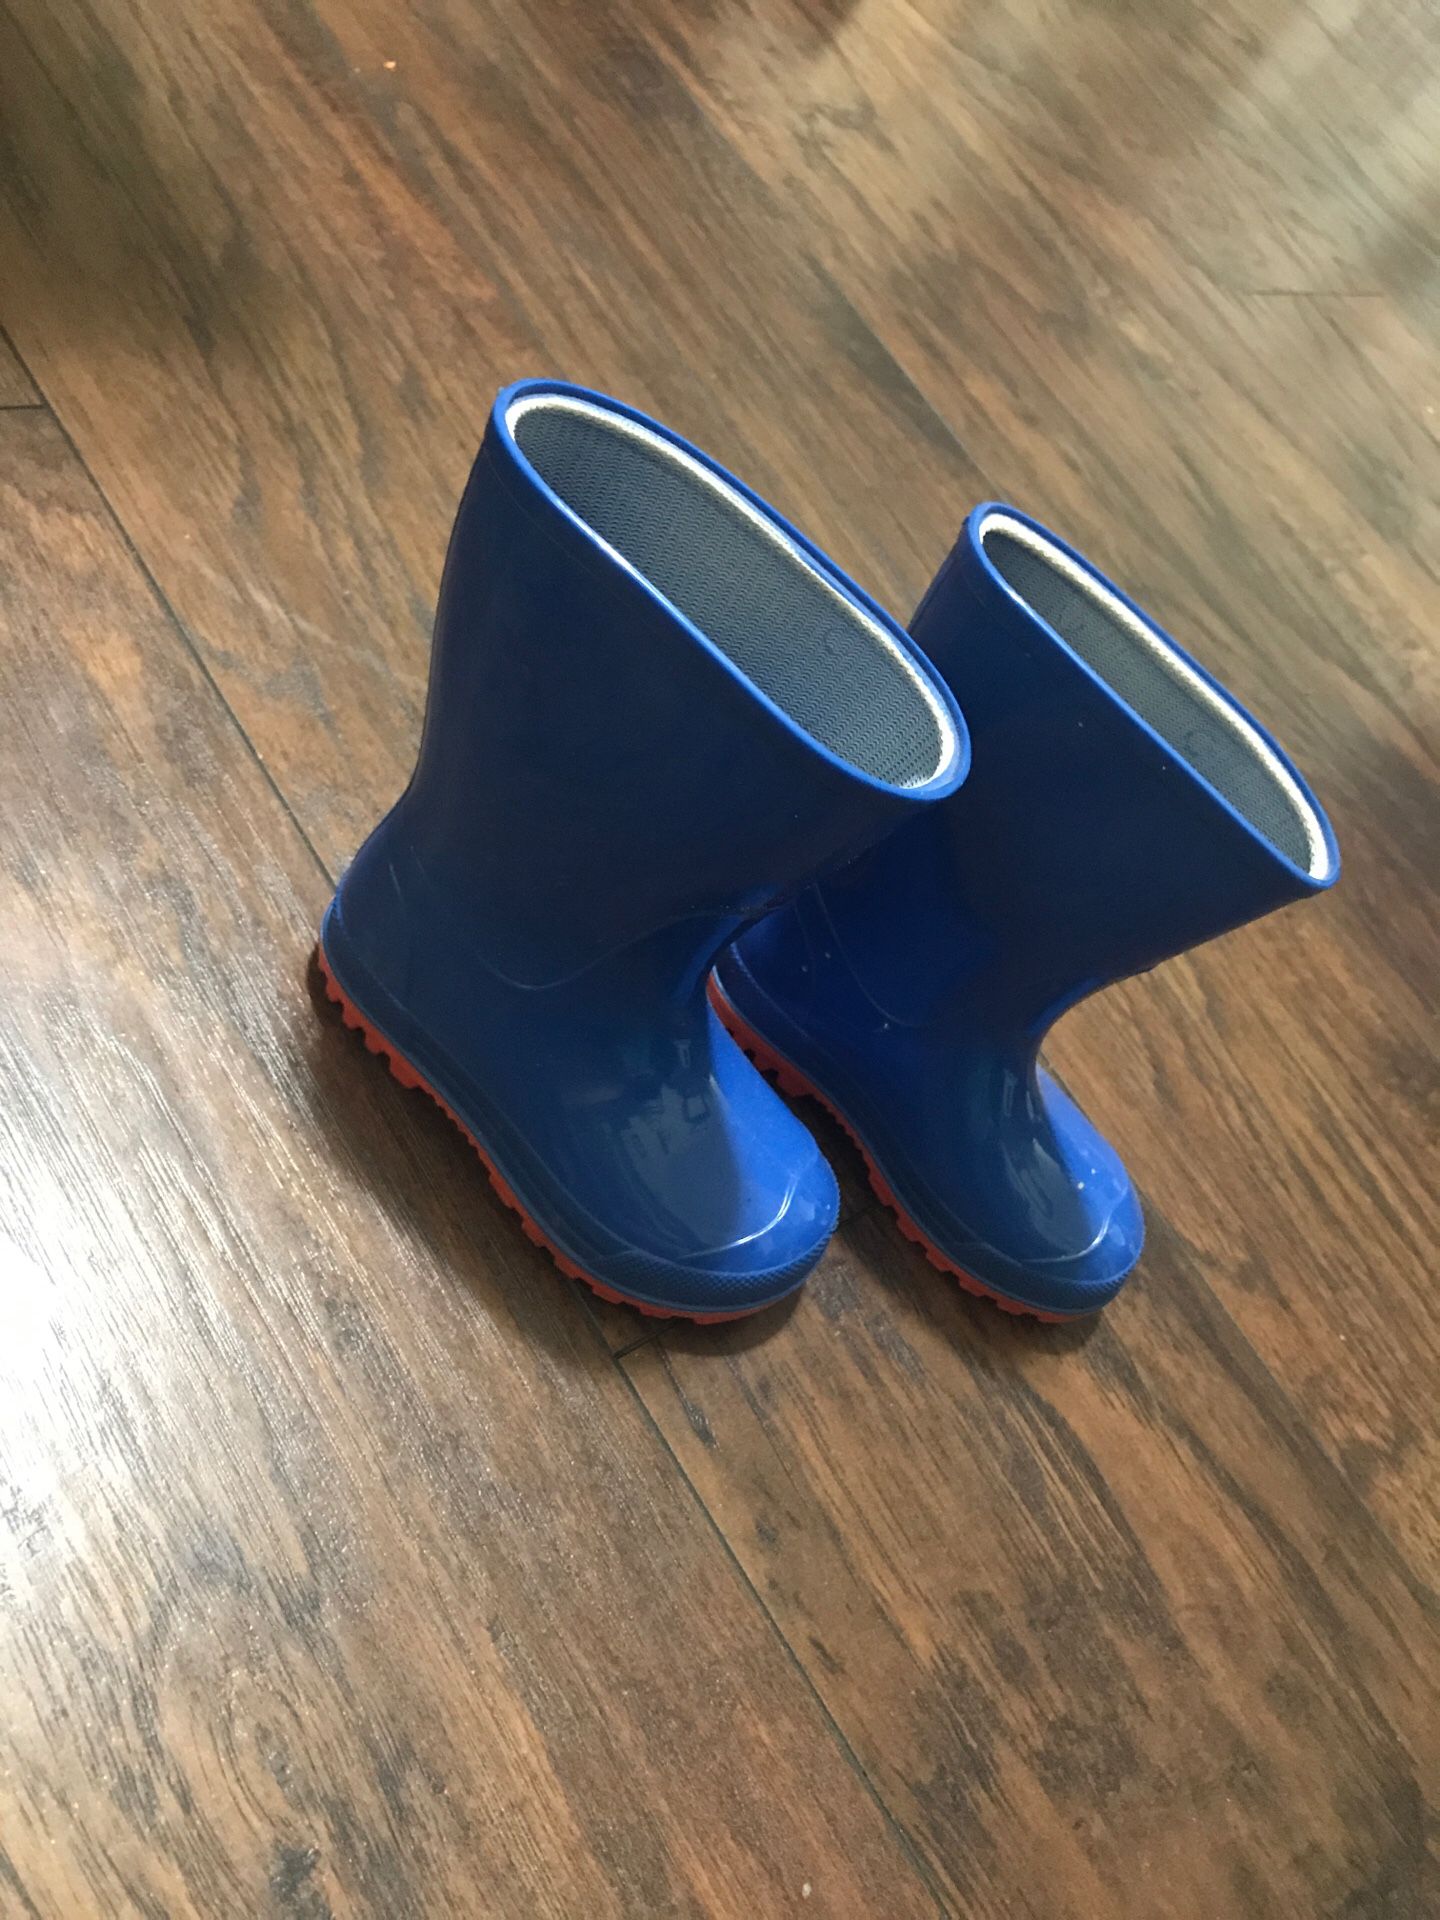 Rain bb boots size 5/6